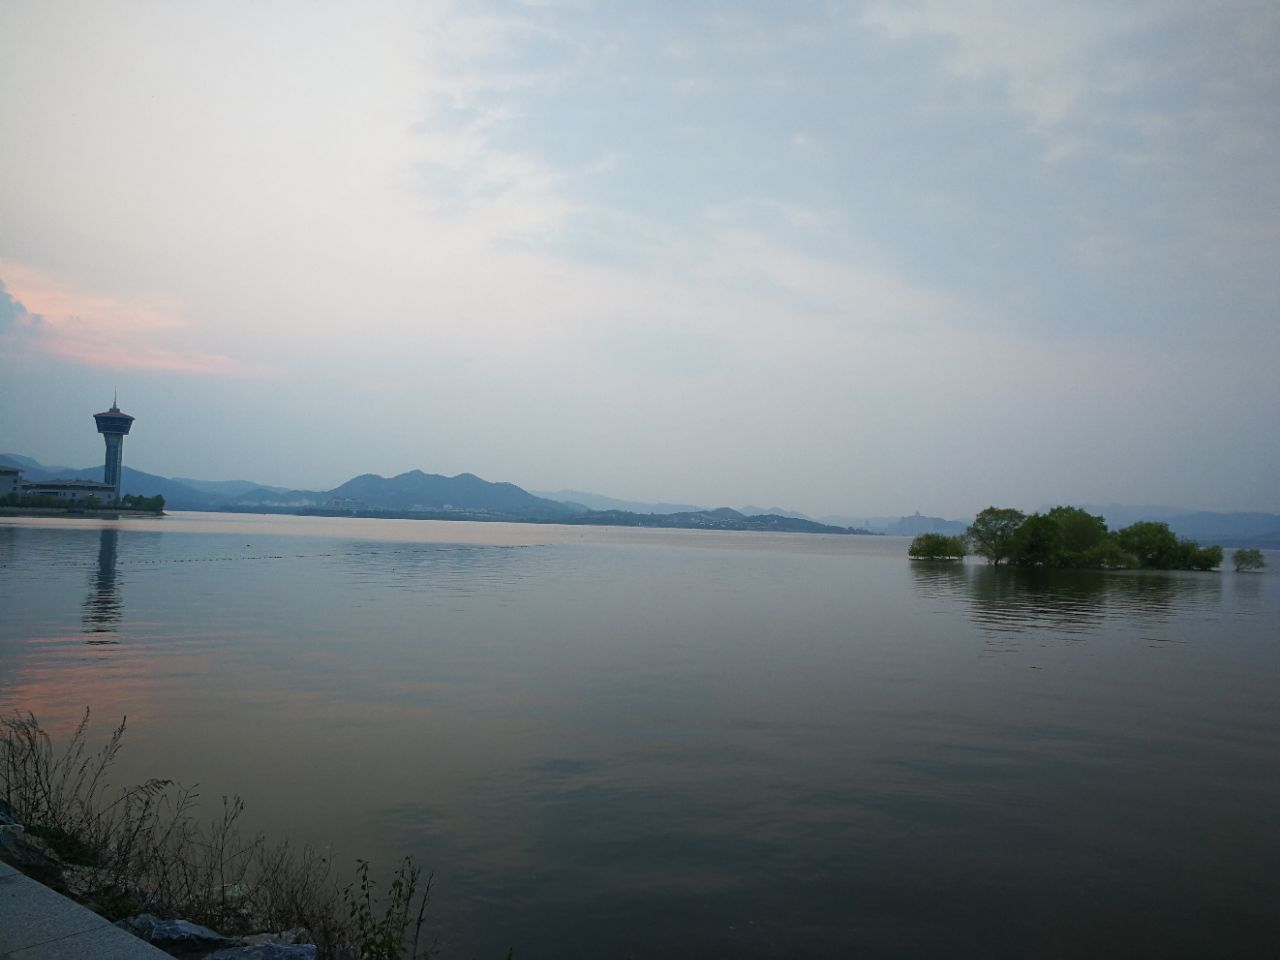 【携程攻略】济南雪野湖景点,雪野湖，即雪野水库，是济南市50公里圈内最大的水面。原属于山东省最…